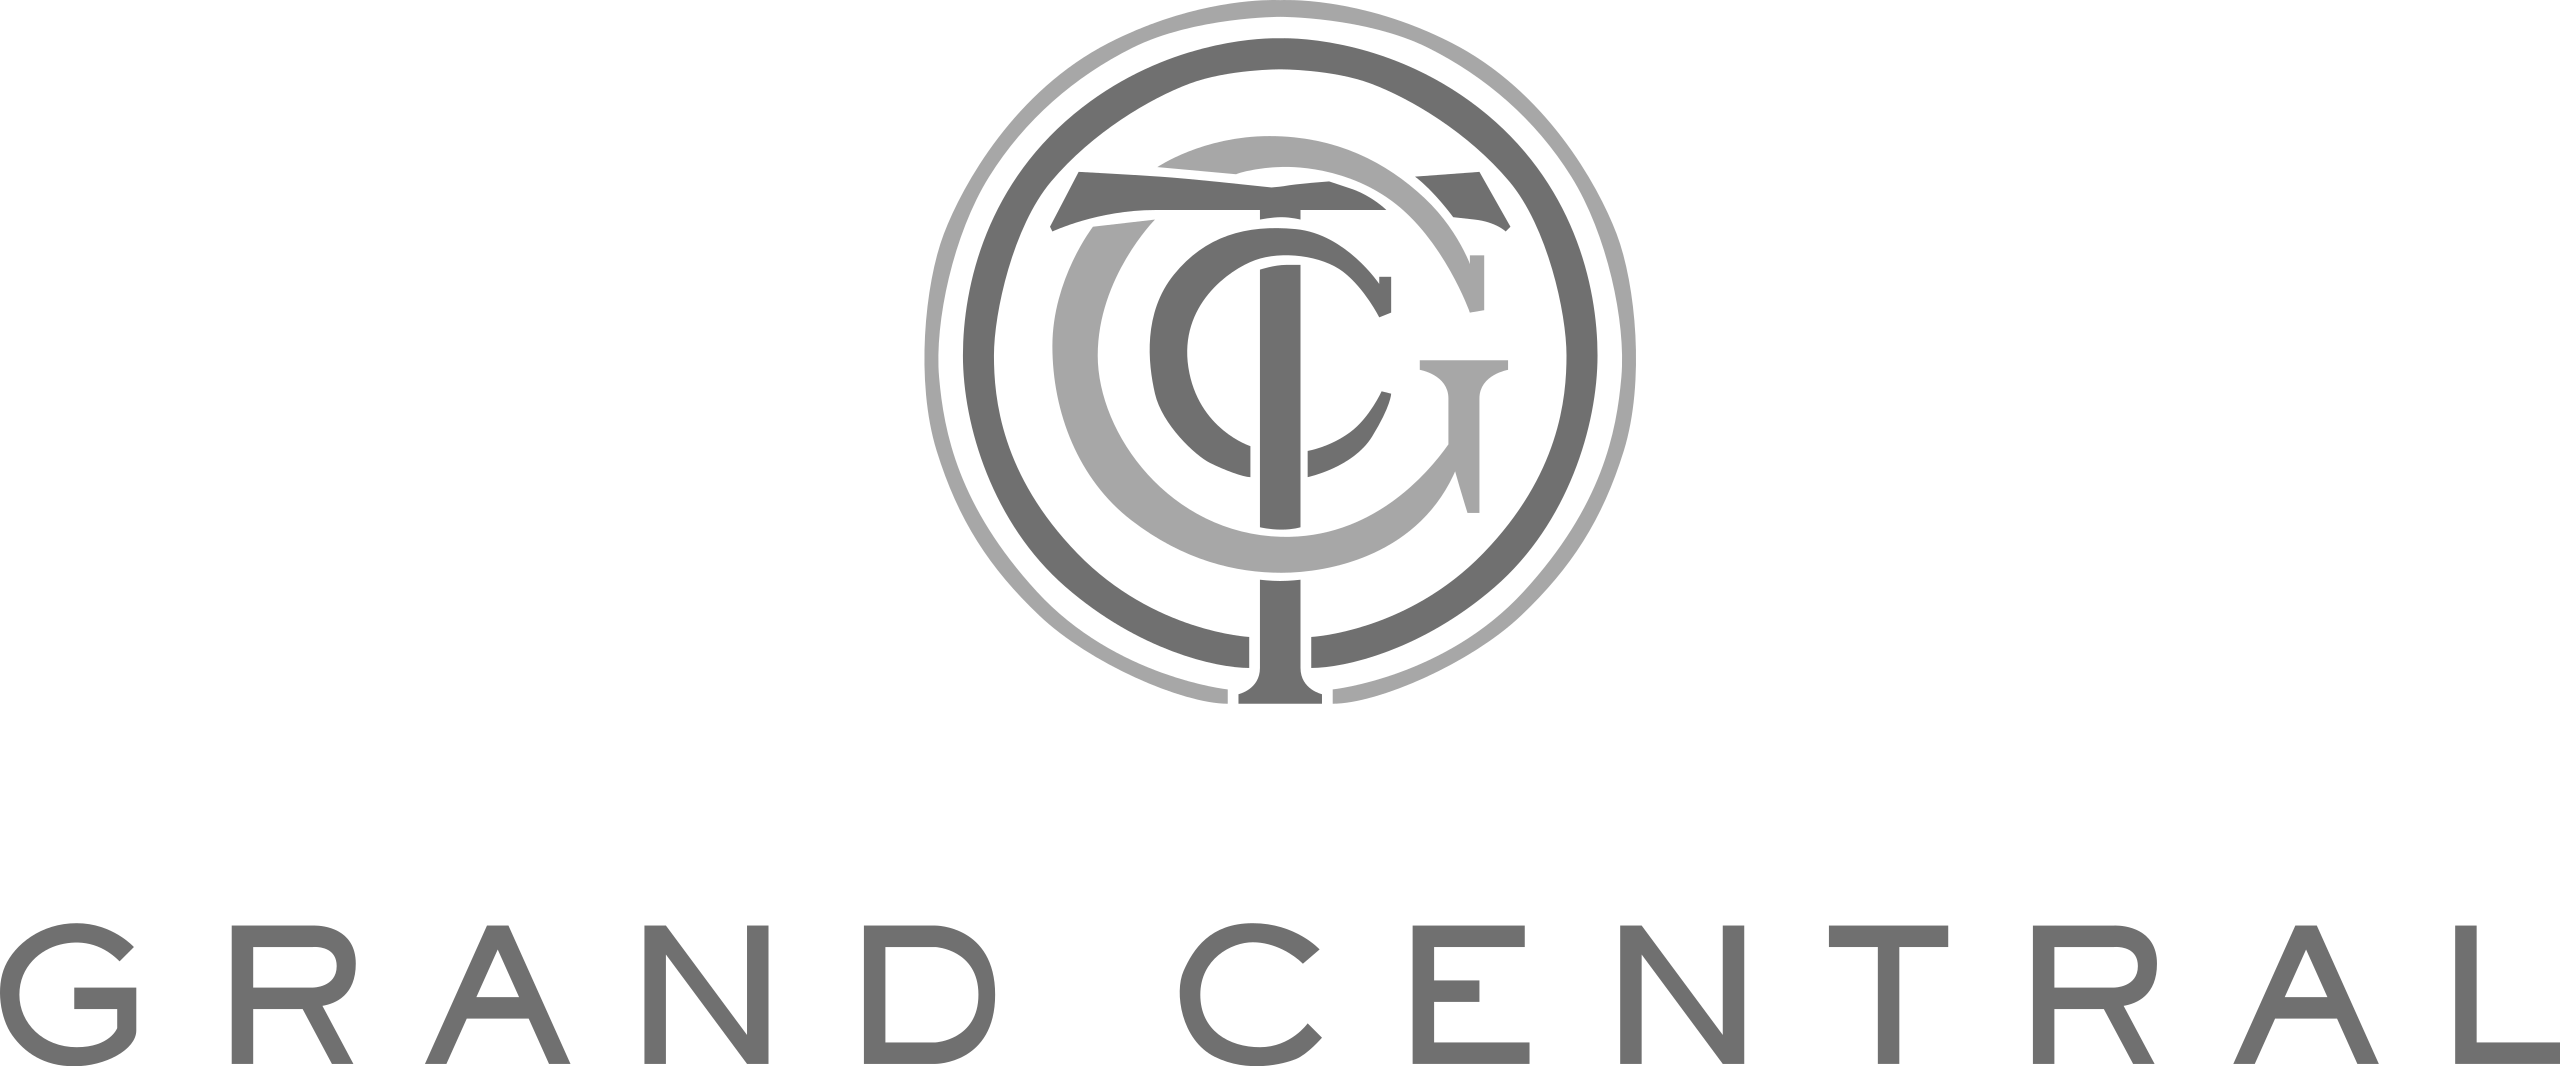 Grand_Central_Terminal_logo_2